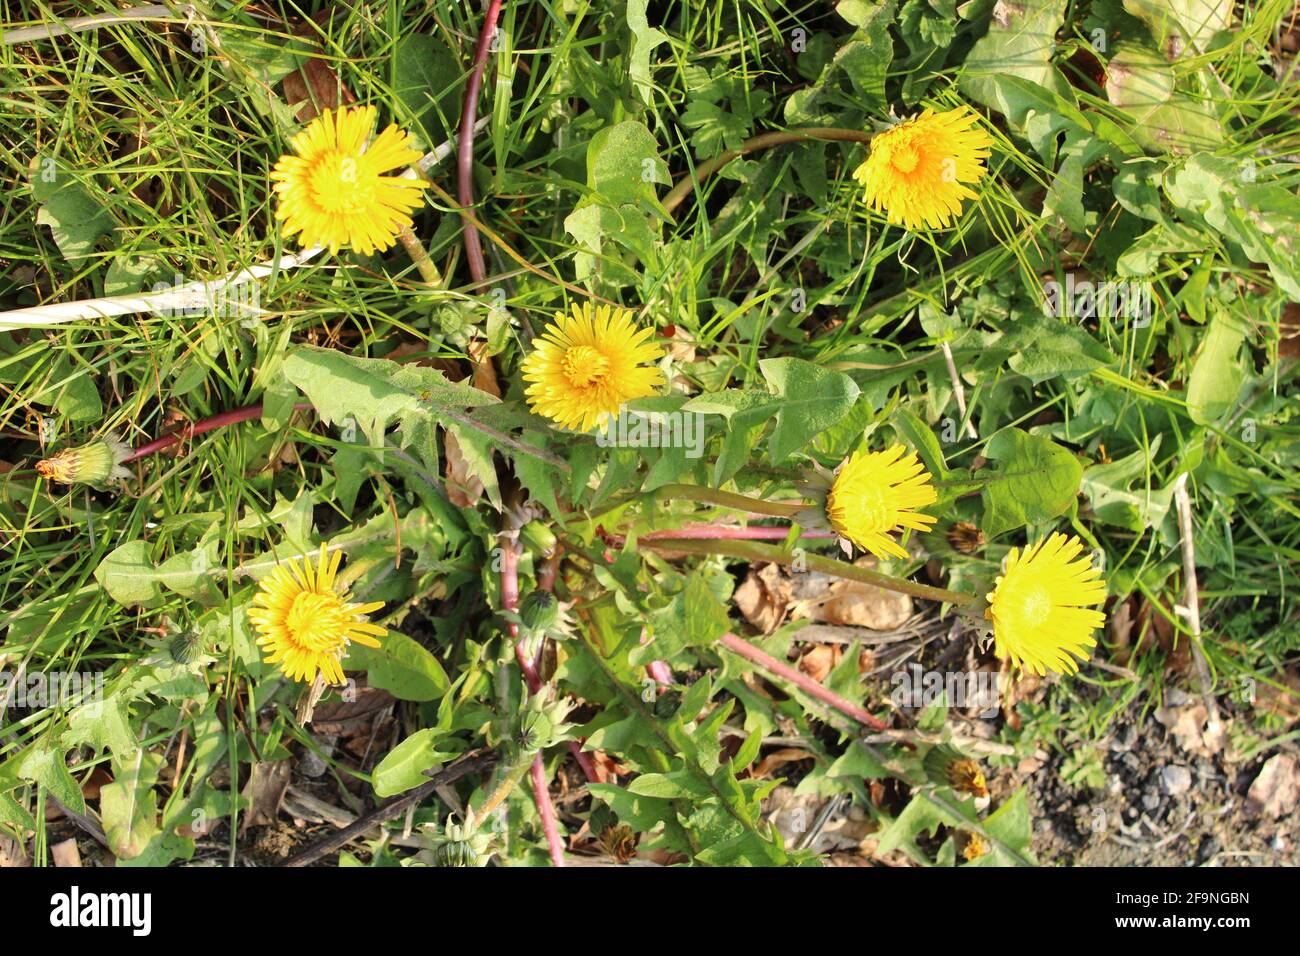 Taraxacum officinale Dandelion pianta composta da numerosi piccoli fiori gialli anche noto come un'erbaccia comune. Foto Stock